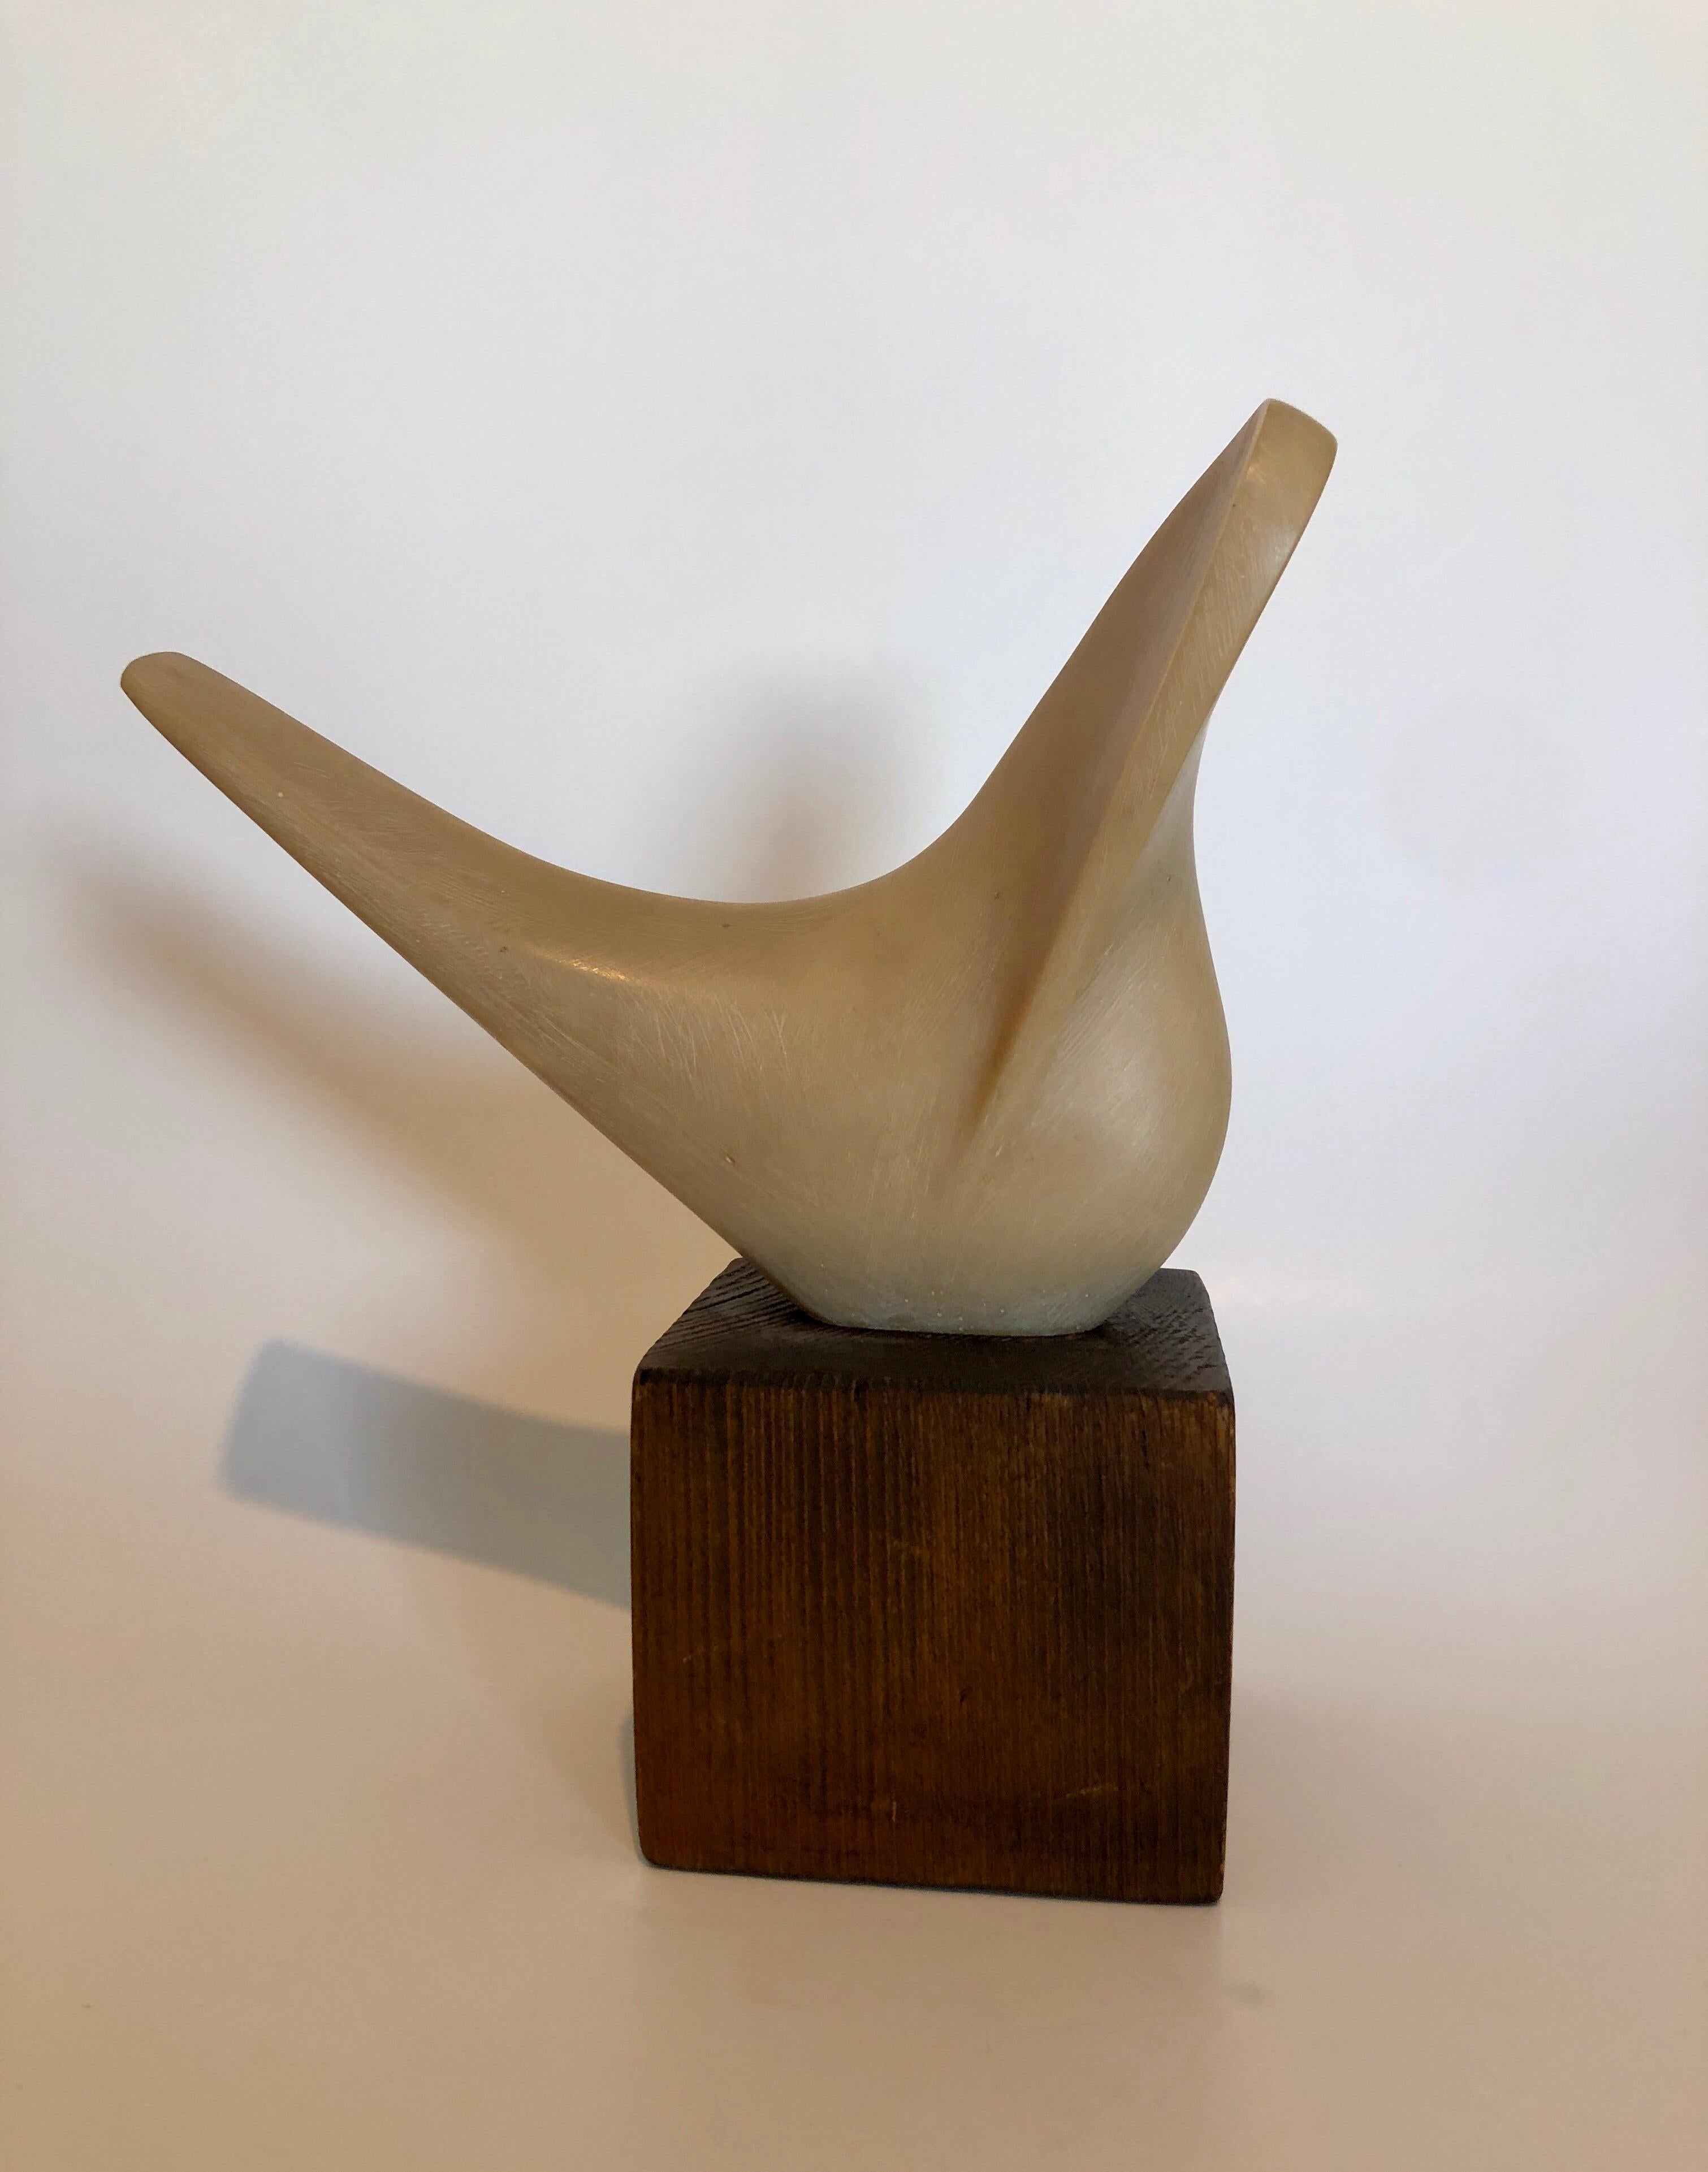 Le sculpteur américain Joseph Martinek est né à Chicago en 1915. Il était un apprenti de deuxième génération d'Auguste Rodin. Il a étudié la sculpture à l'École nationale industrielle d'art de Prague, en Tchécoslovaquie, de 1934 à 1939. 
Cette forme